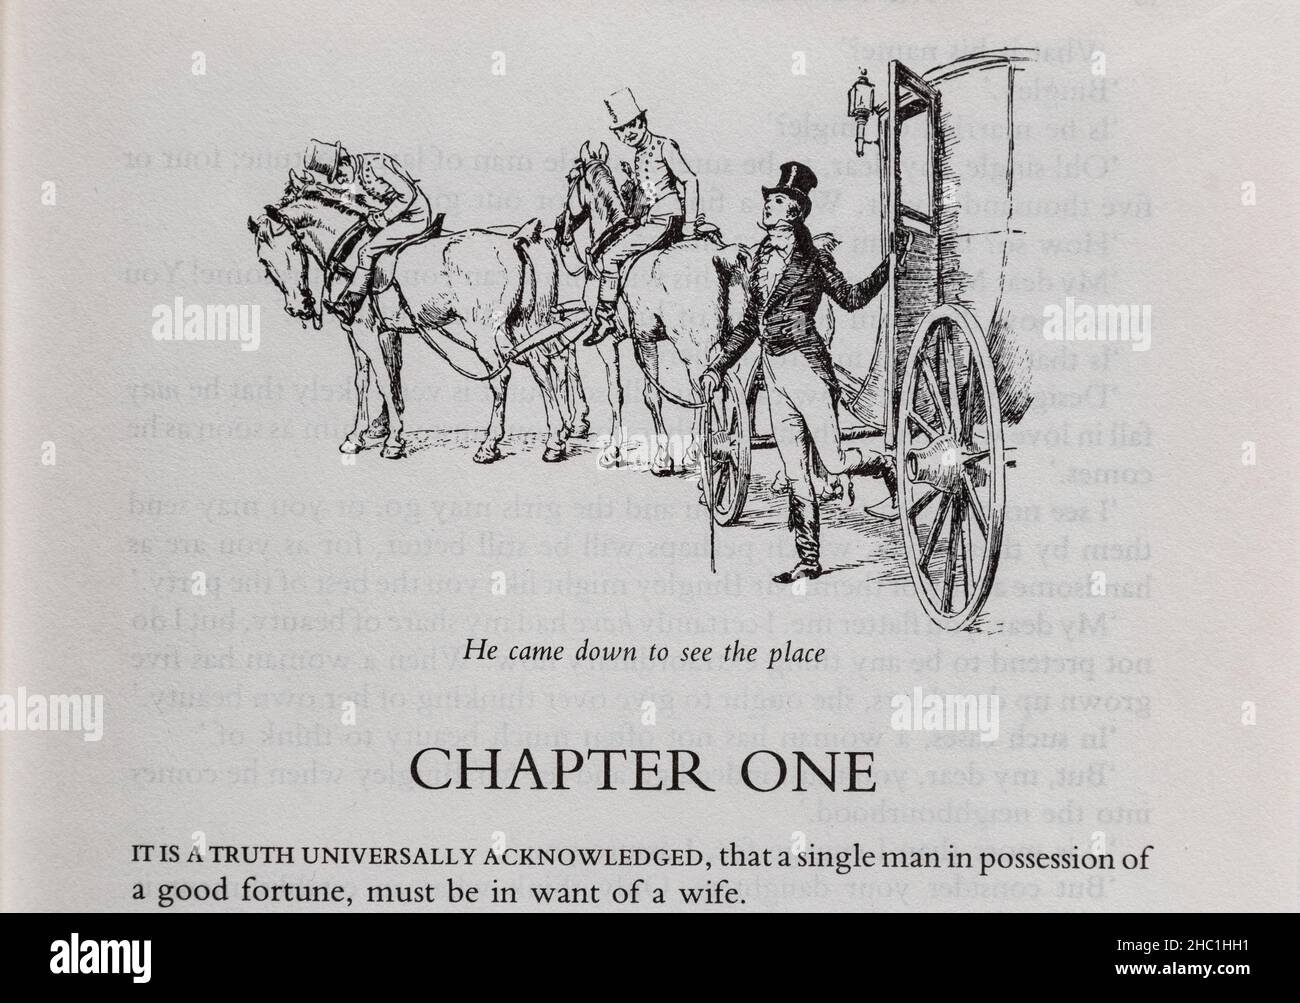 Première ligne de fierté et de préjugés, roman classique de Jane Austen, avec illustration de l'entraîneur et des chevaux Banque D'Images